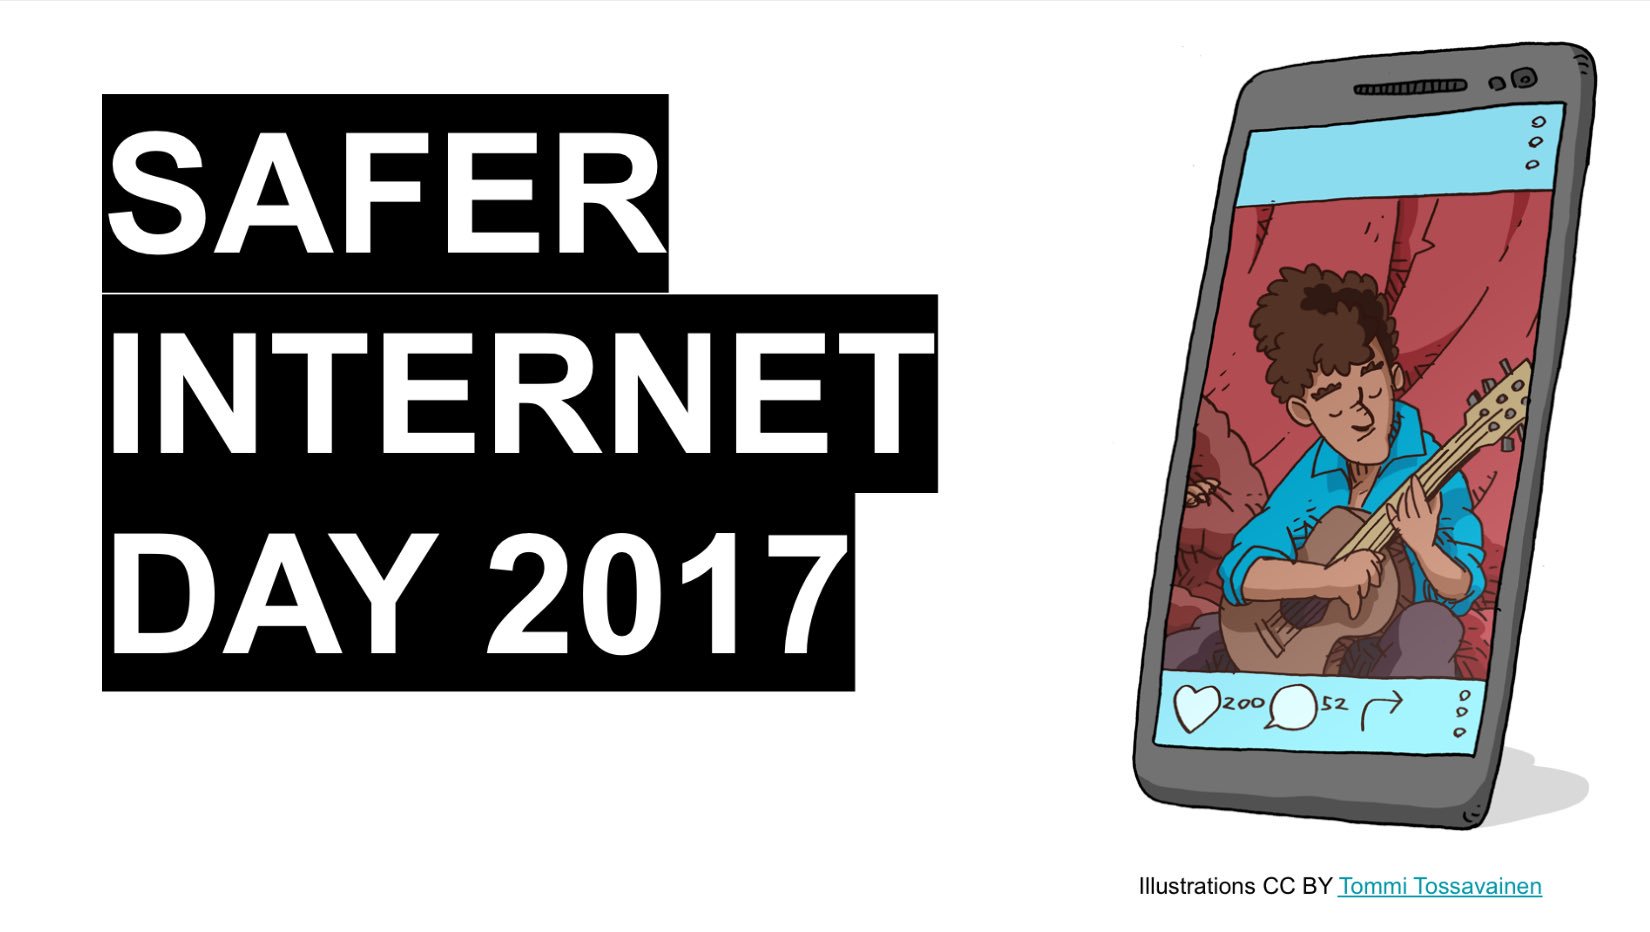 Safer Internet Day 2017